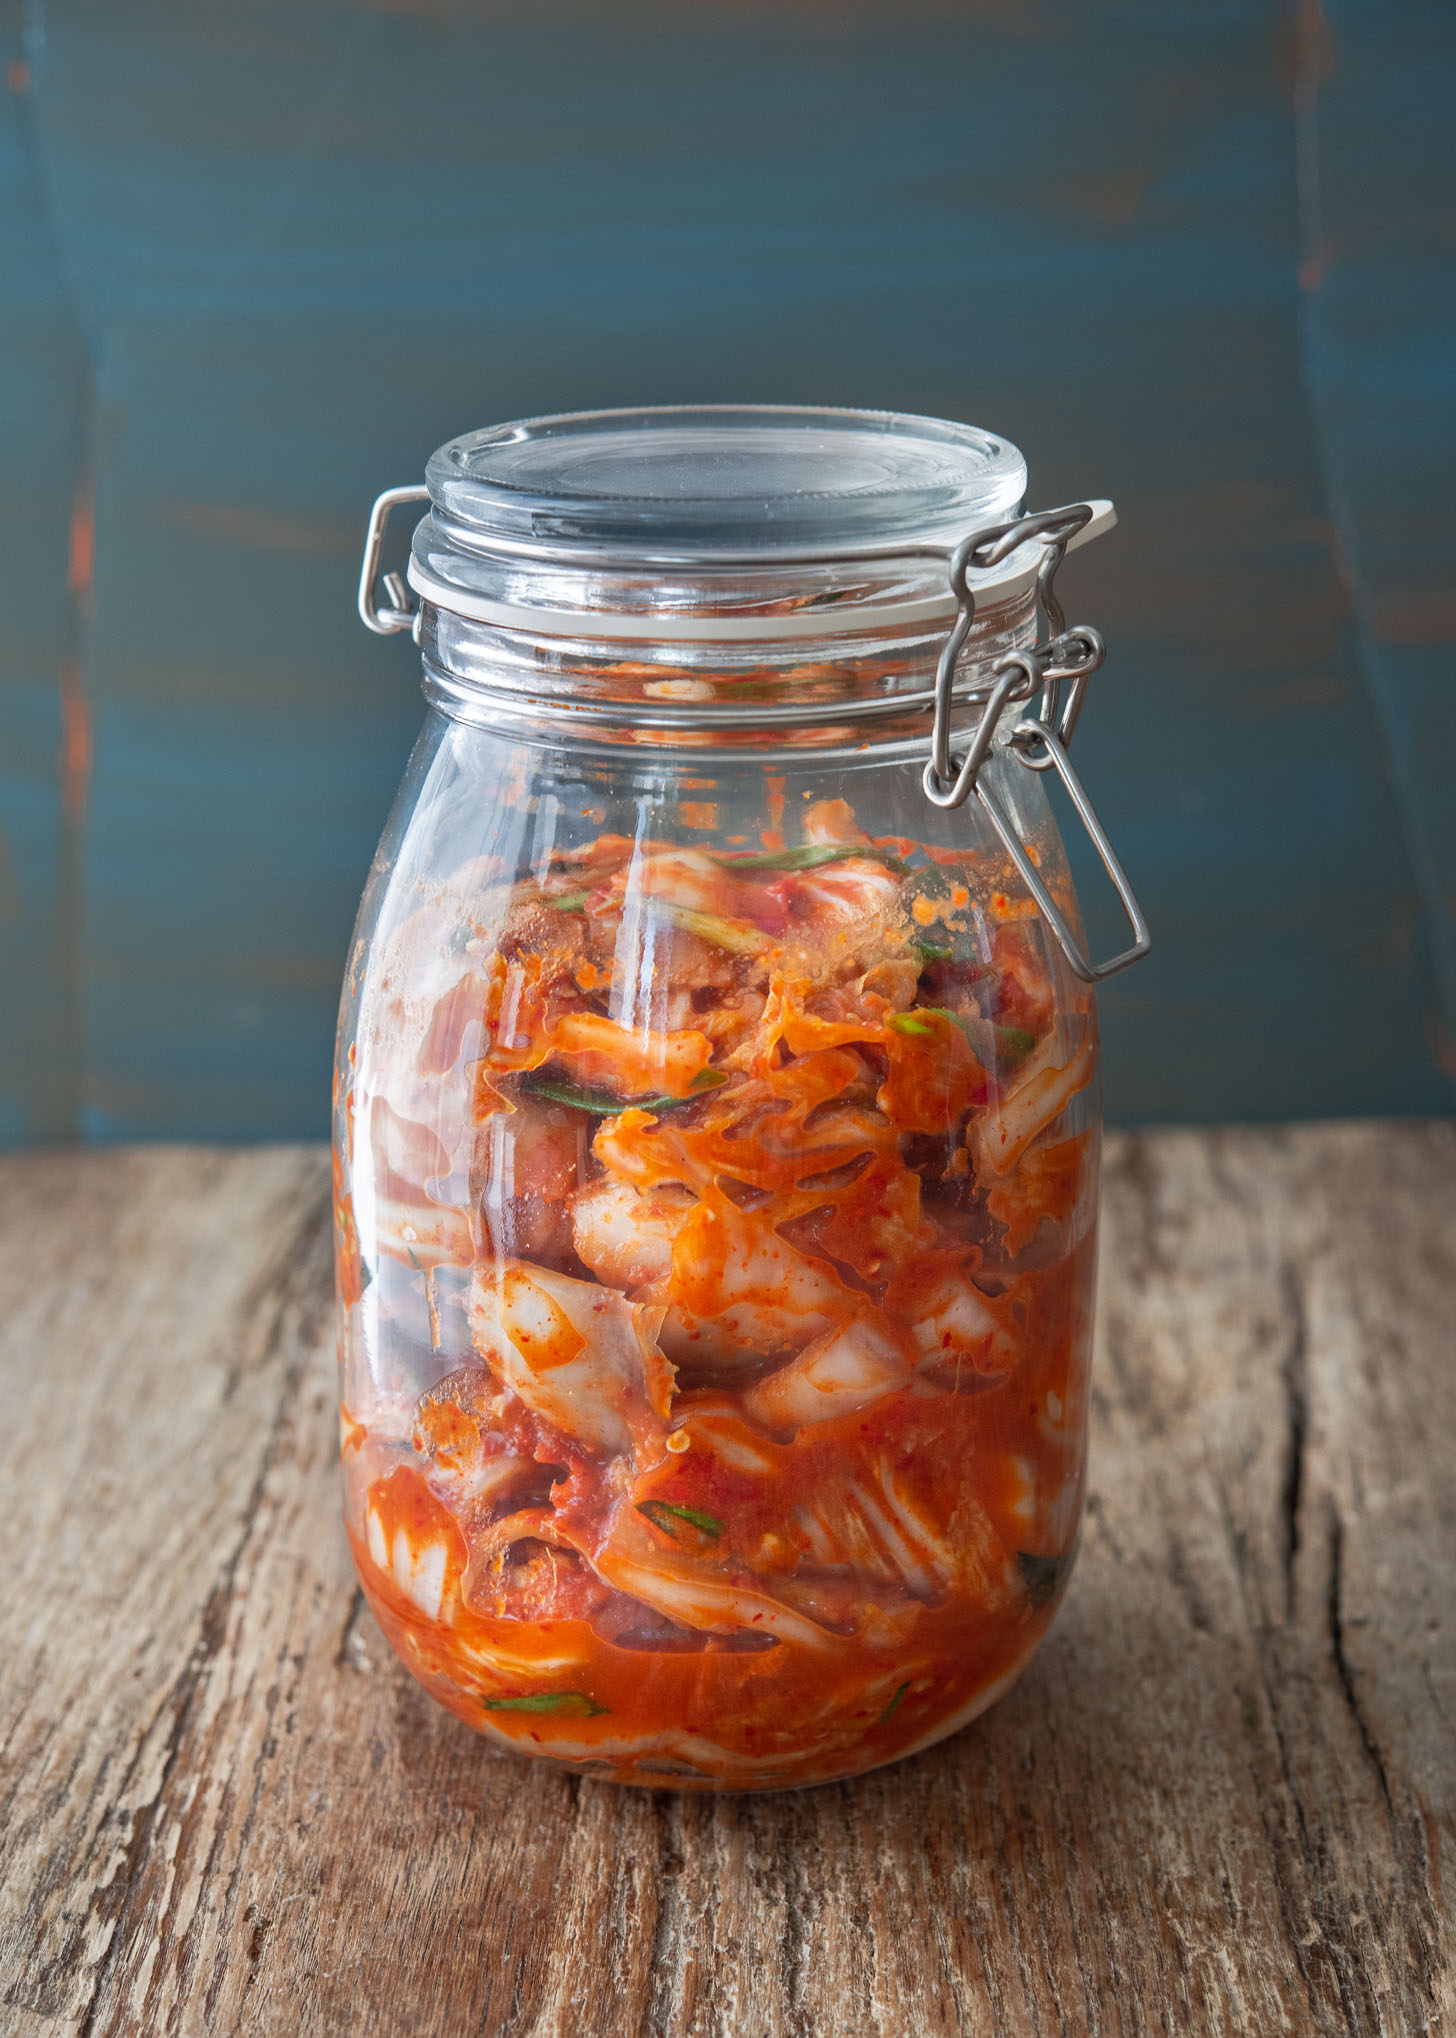 Vegan kimchi fermenting in a glass jar.